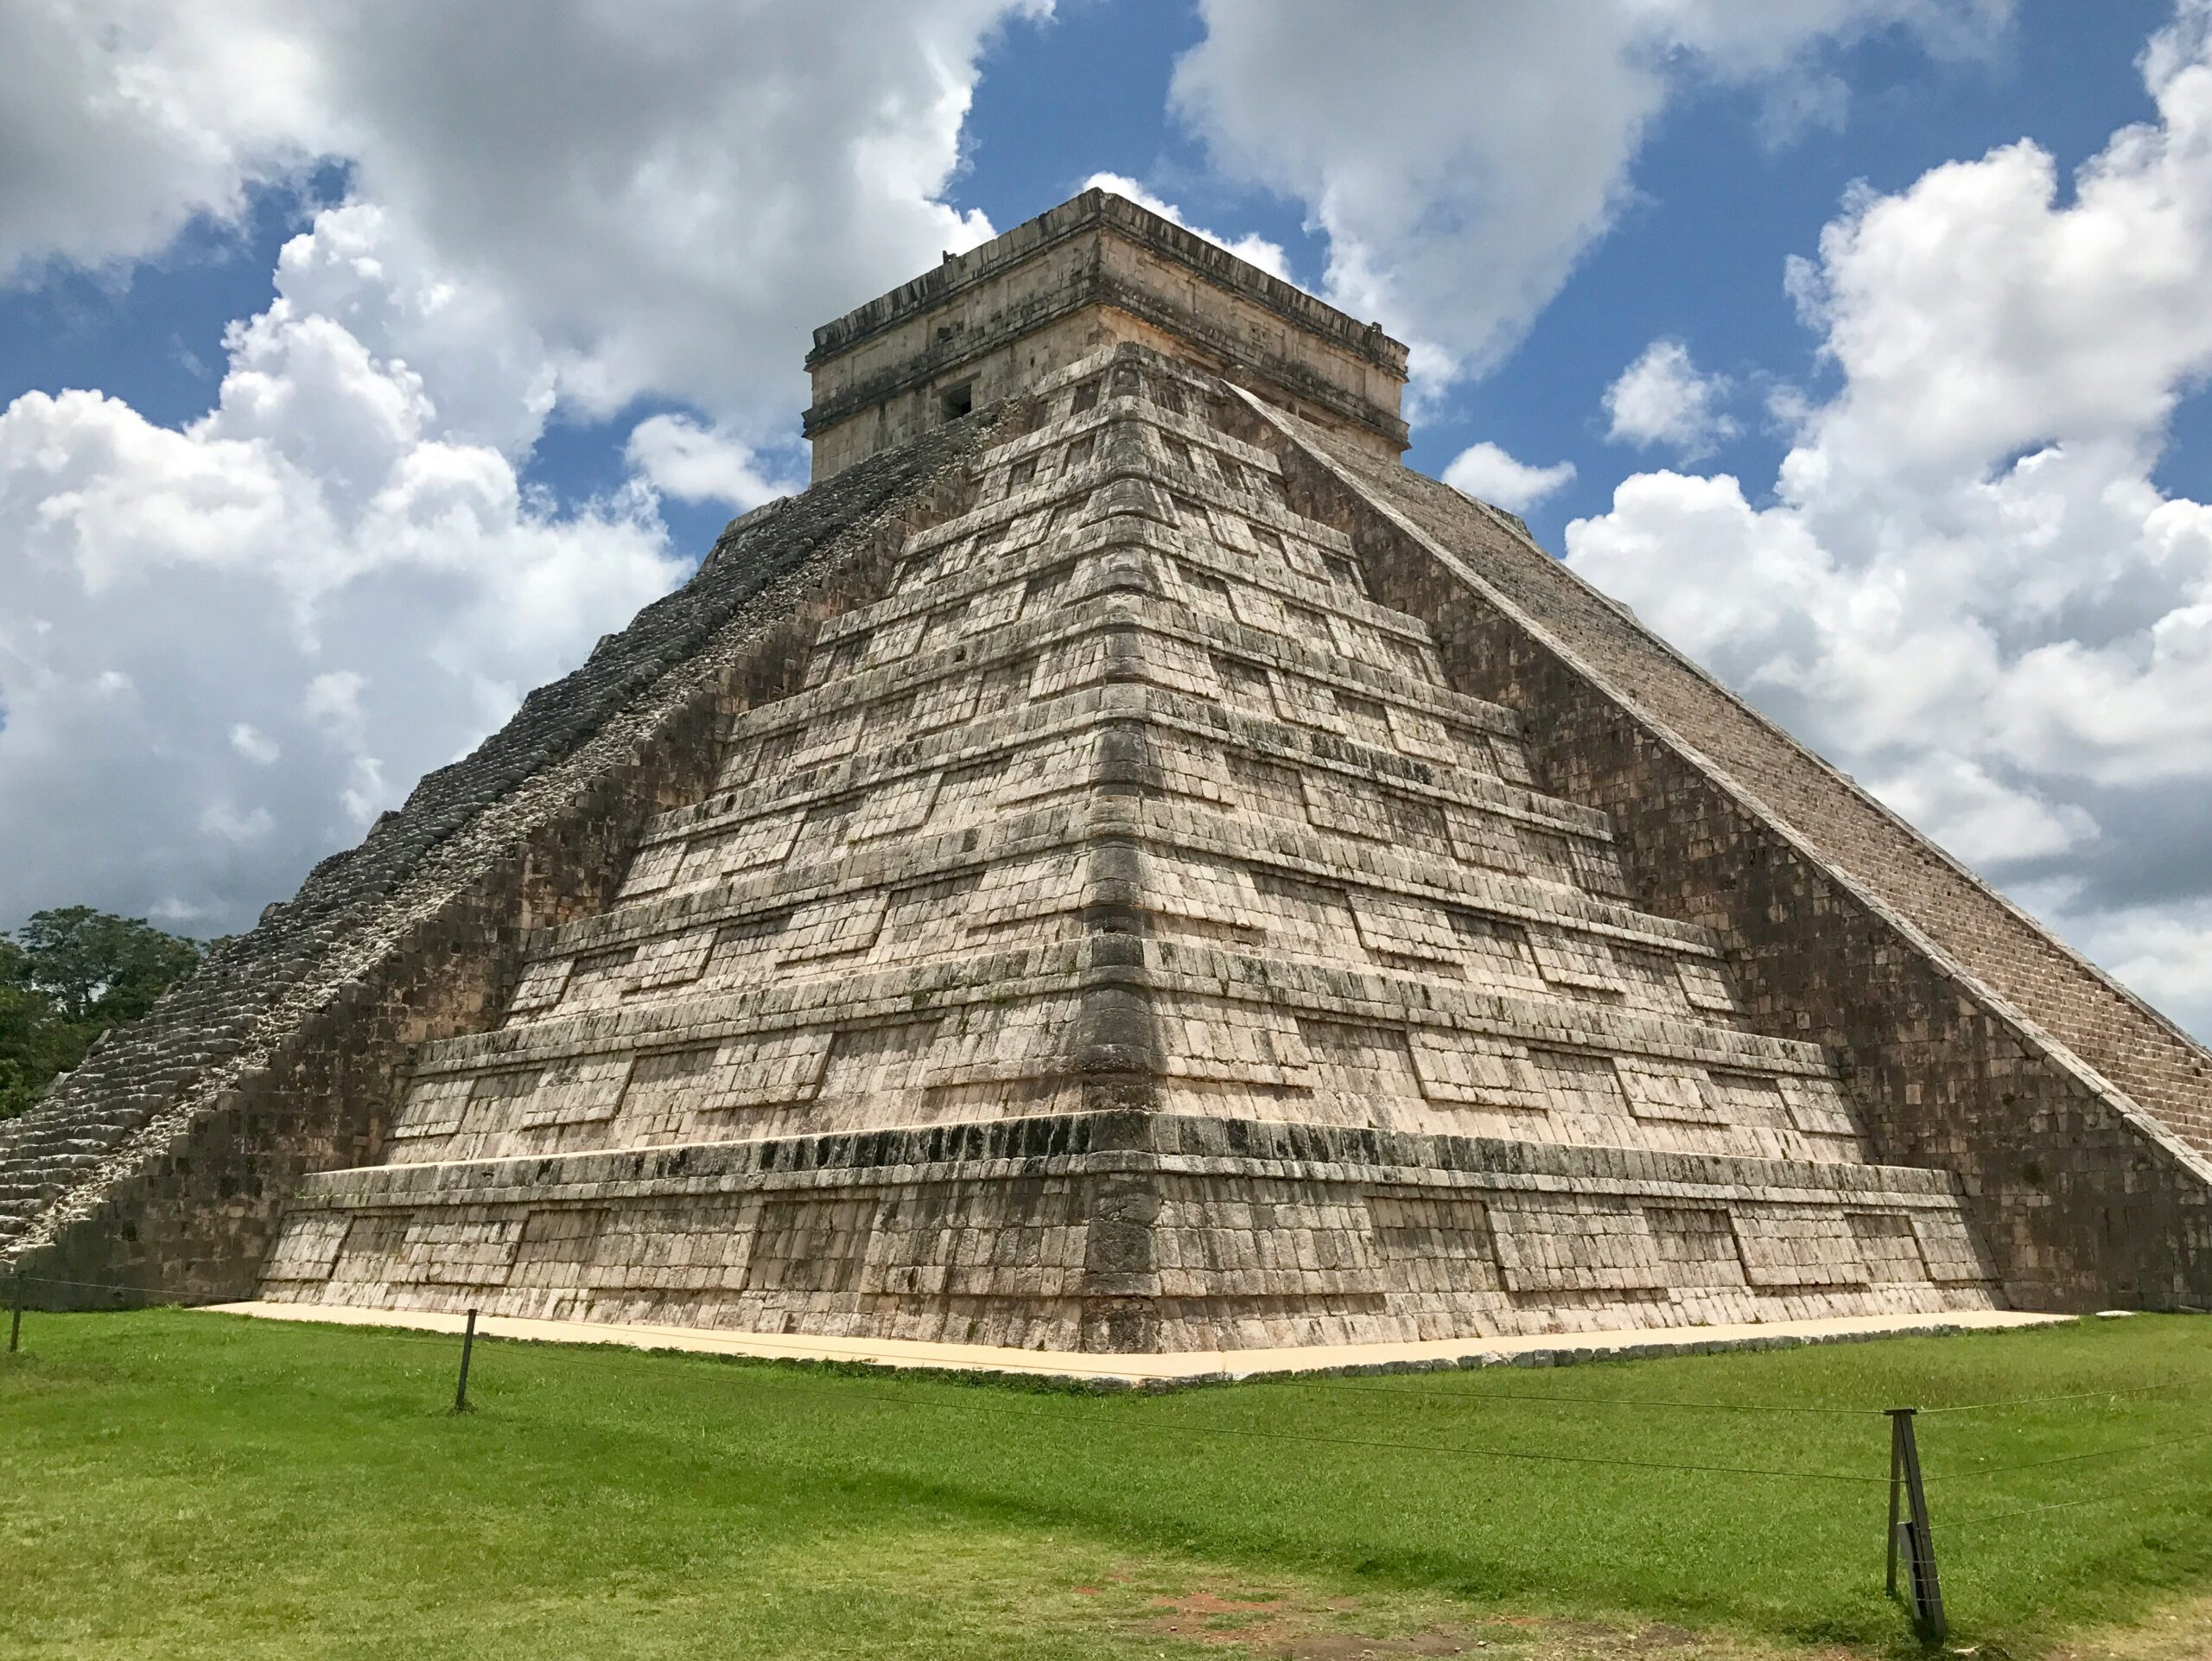 Meksyk - wyjazdy grupowe incentive travel Kulturowe